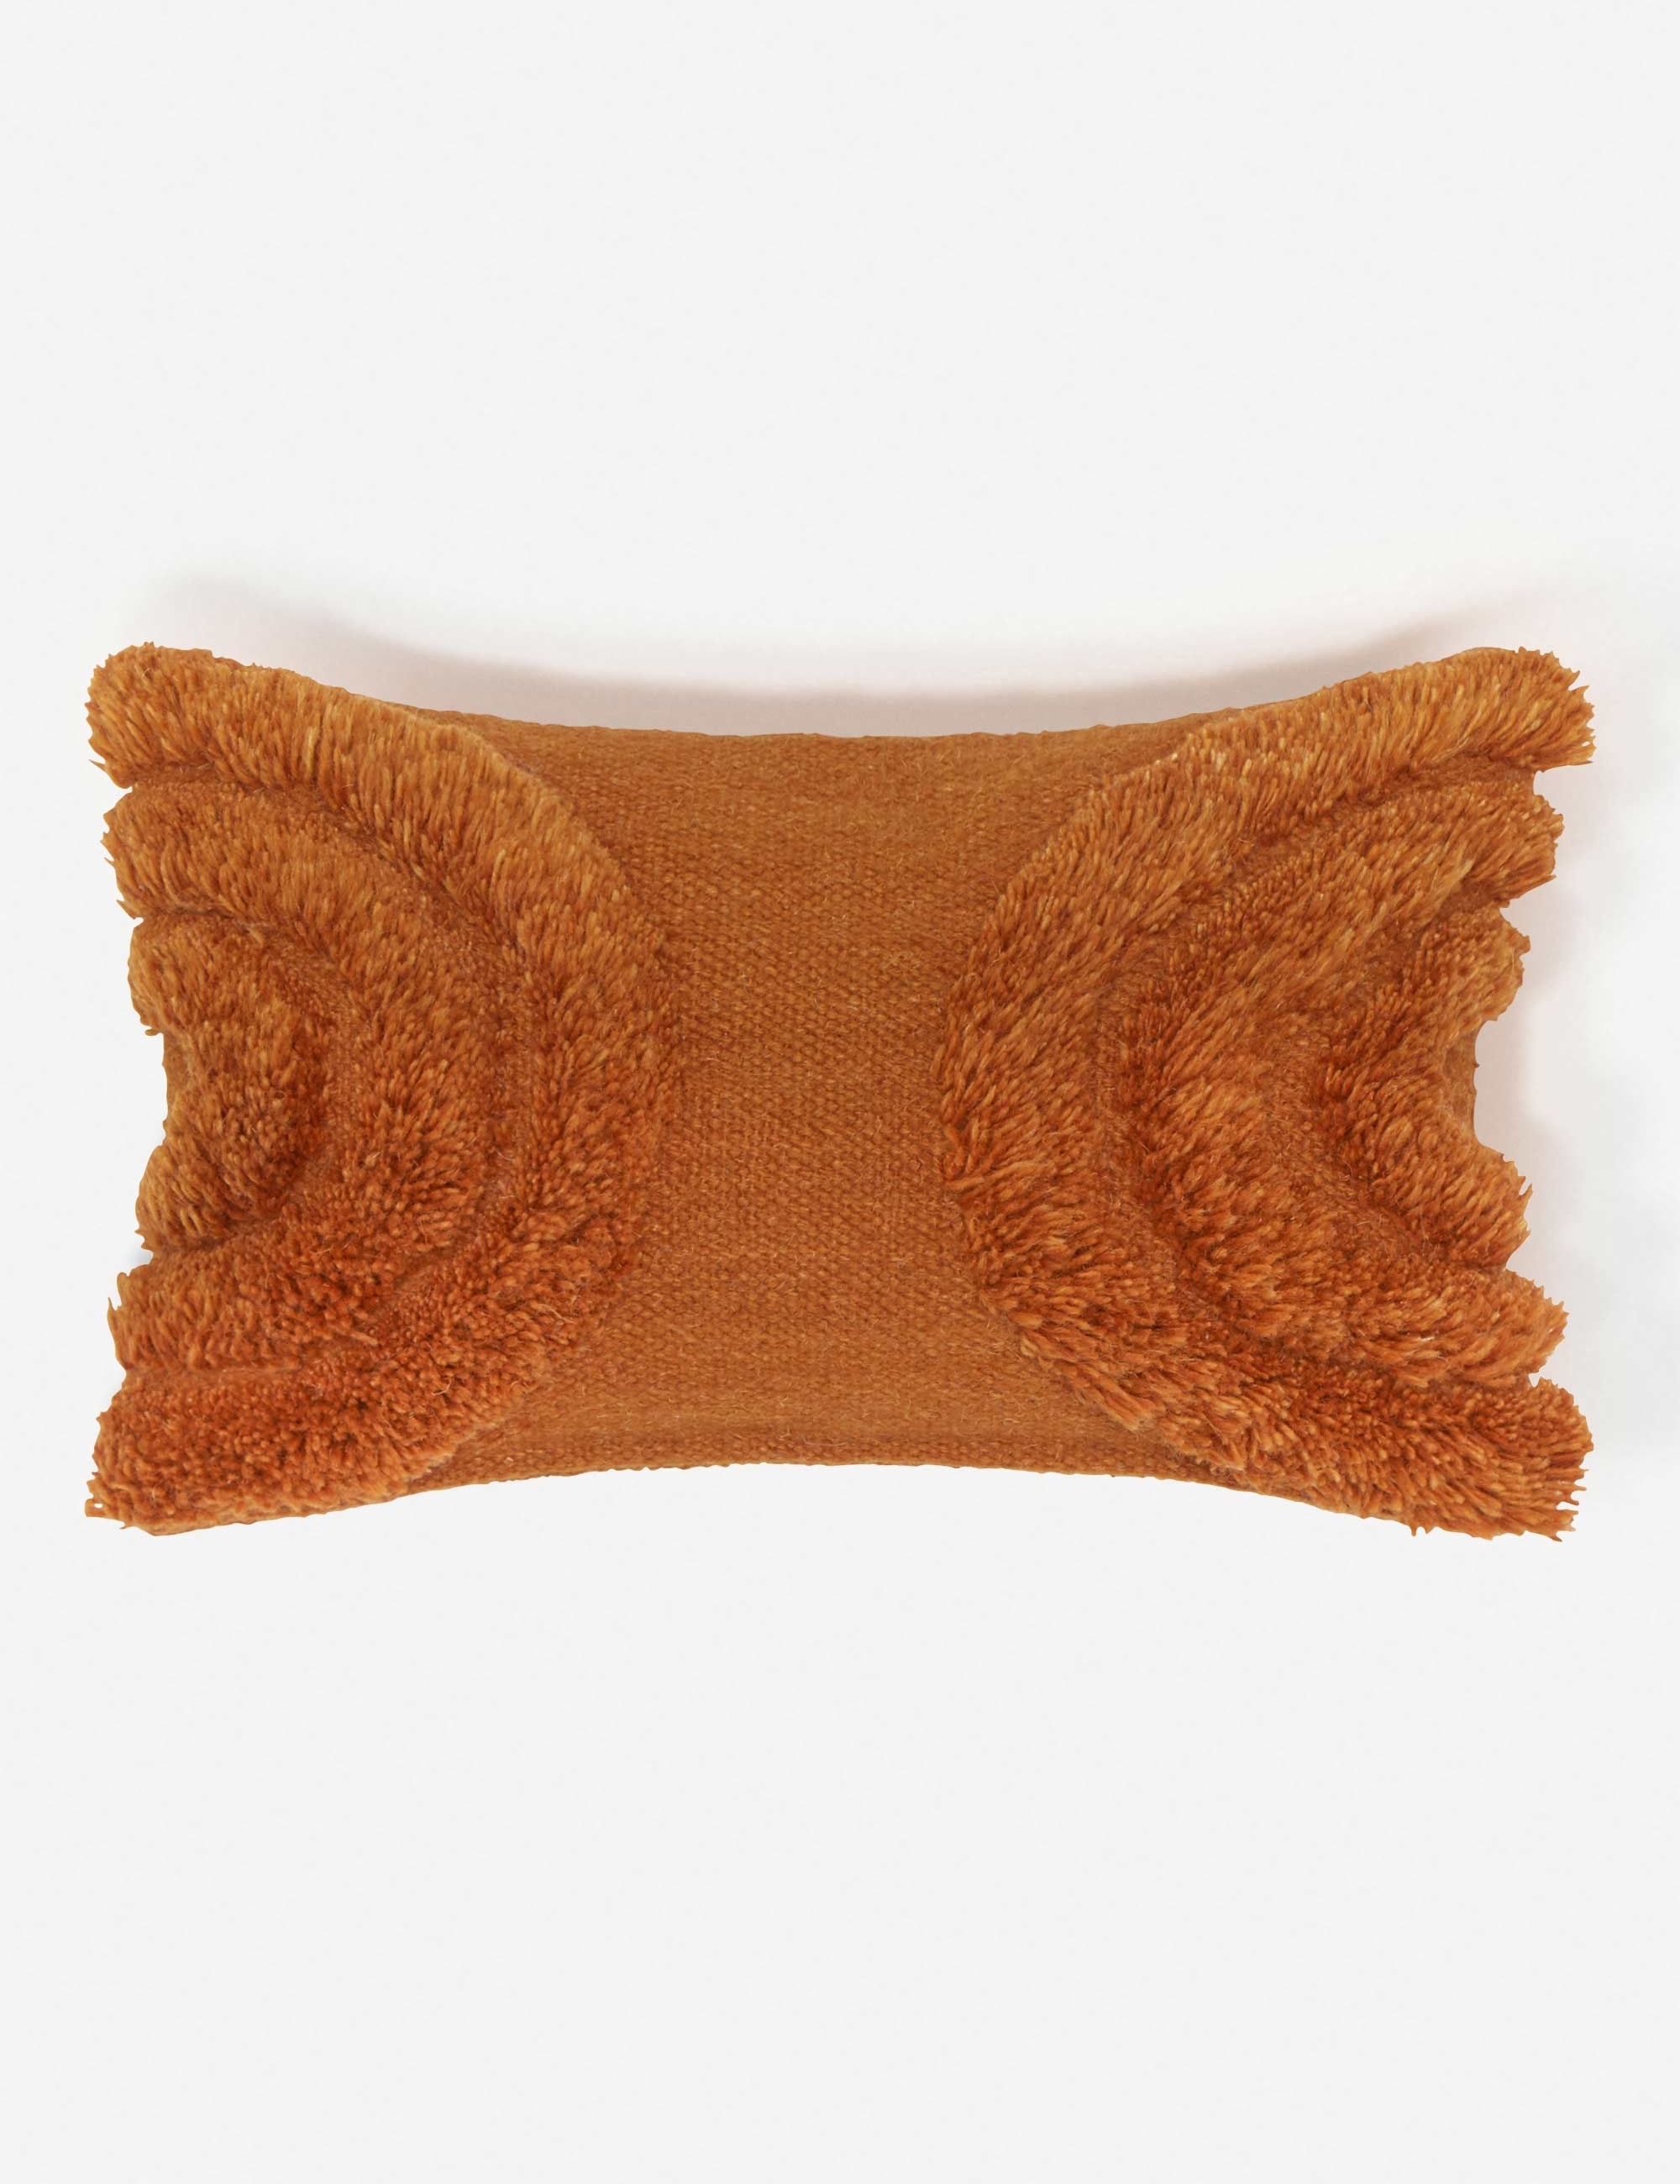 Arches Lumbar Pillow, Rust By Sarah Sherman Samuel - Image 0